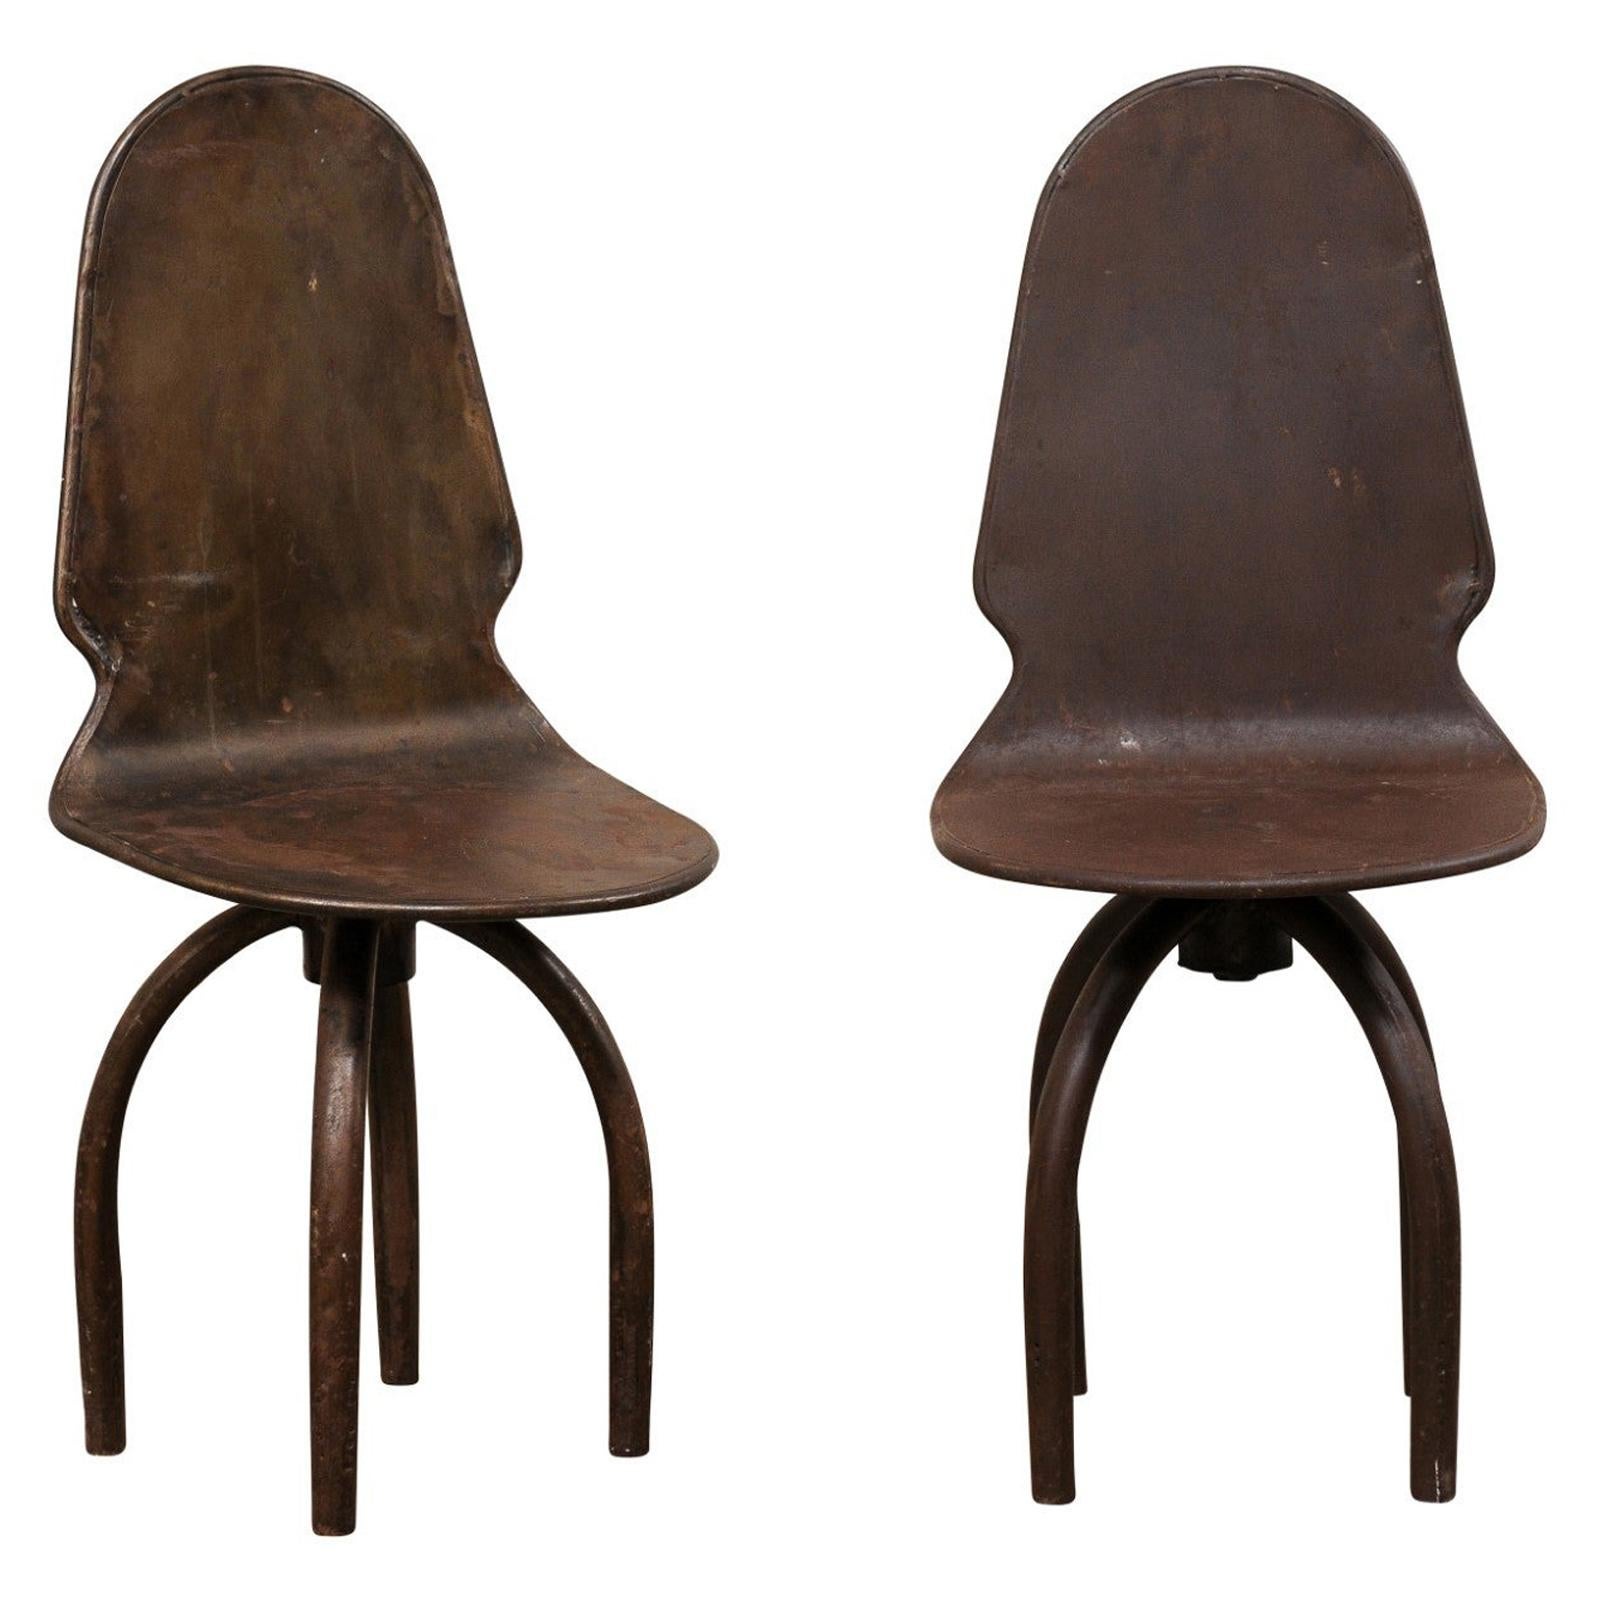 Paire de chaises pivotantes espagnoles en fer sur pieds en forme d'araignée, style industriel-Chic